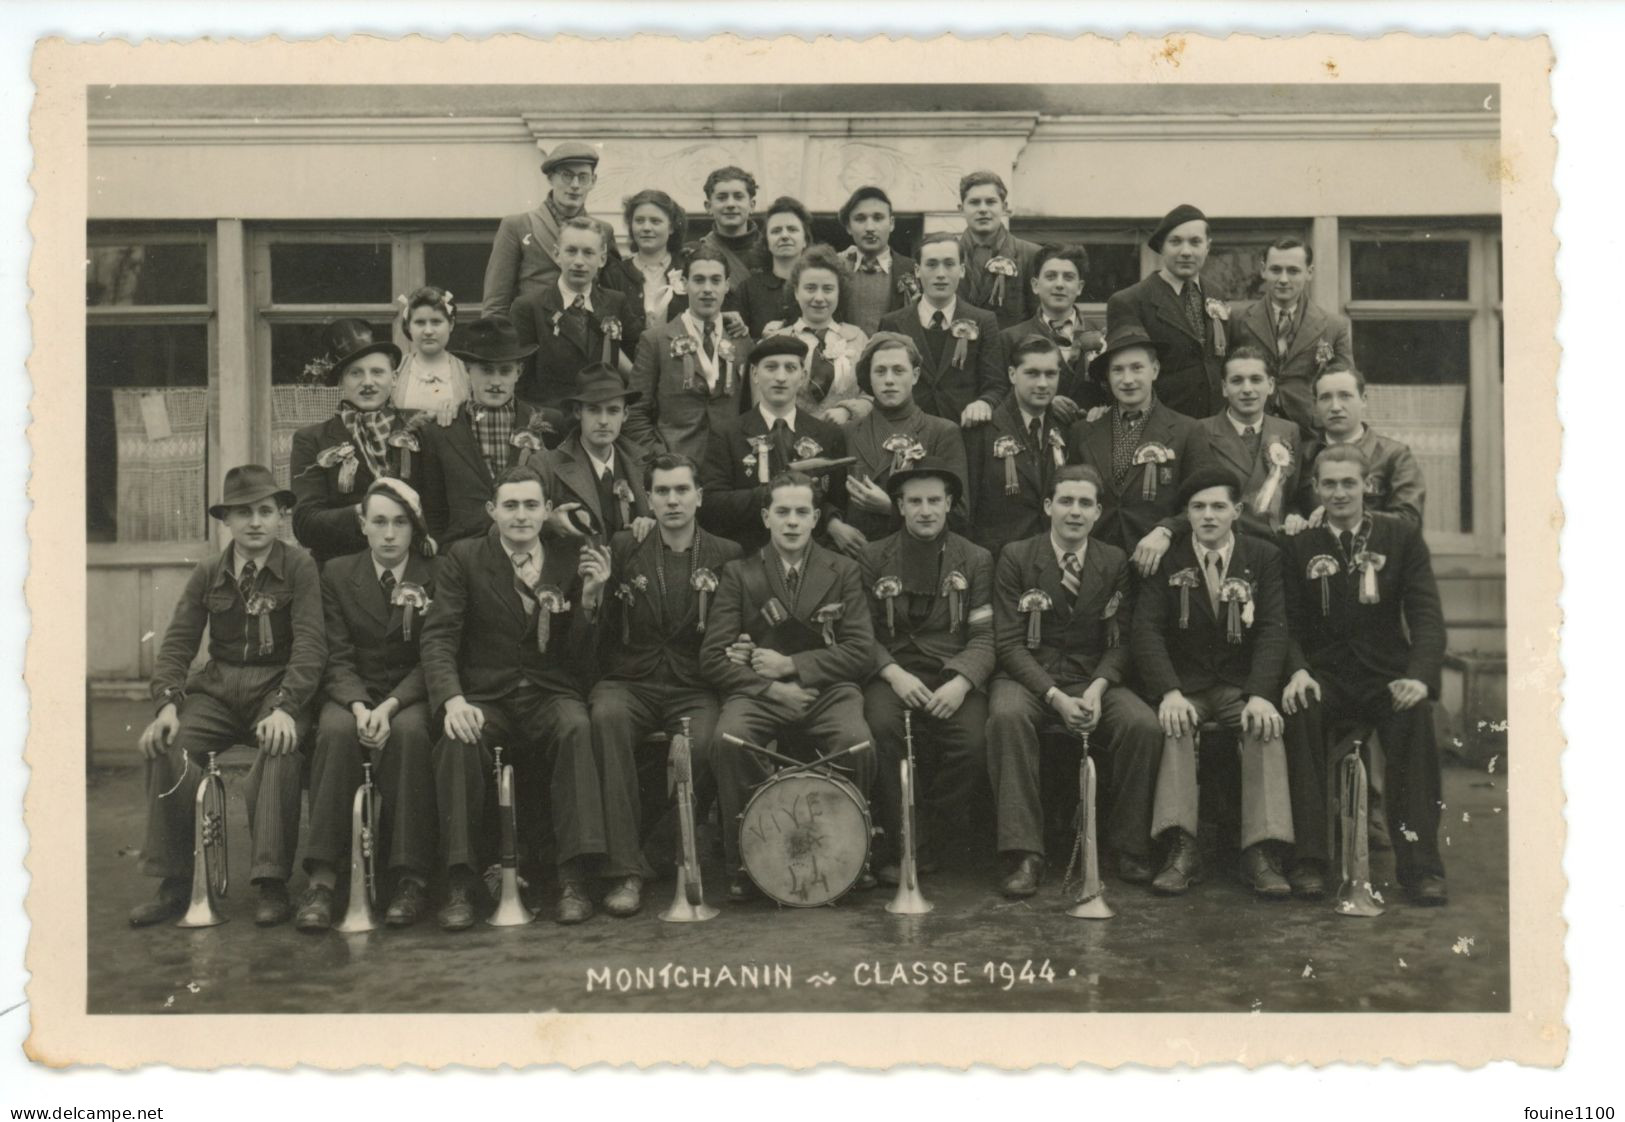 PHOTO Au Format 15,8 X 10,5 Cm MONTCHANIN Classe 1944 ( Conscrits ) Photographe ROBILLARD - Non Classés